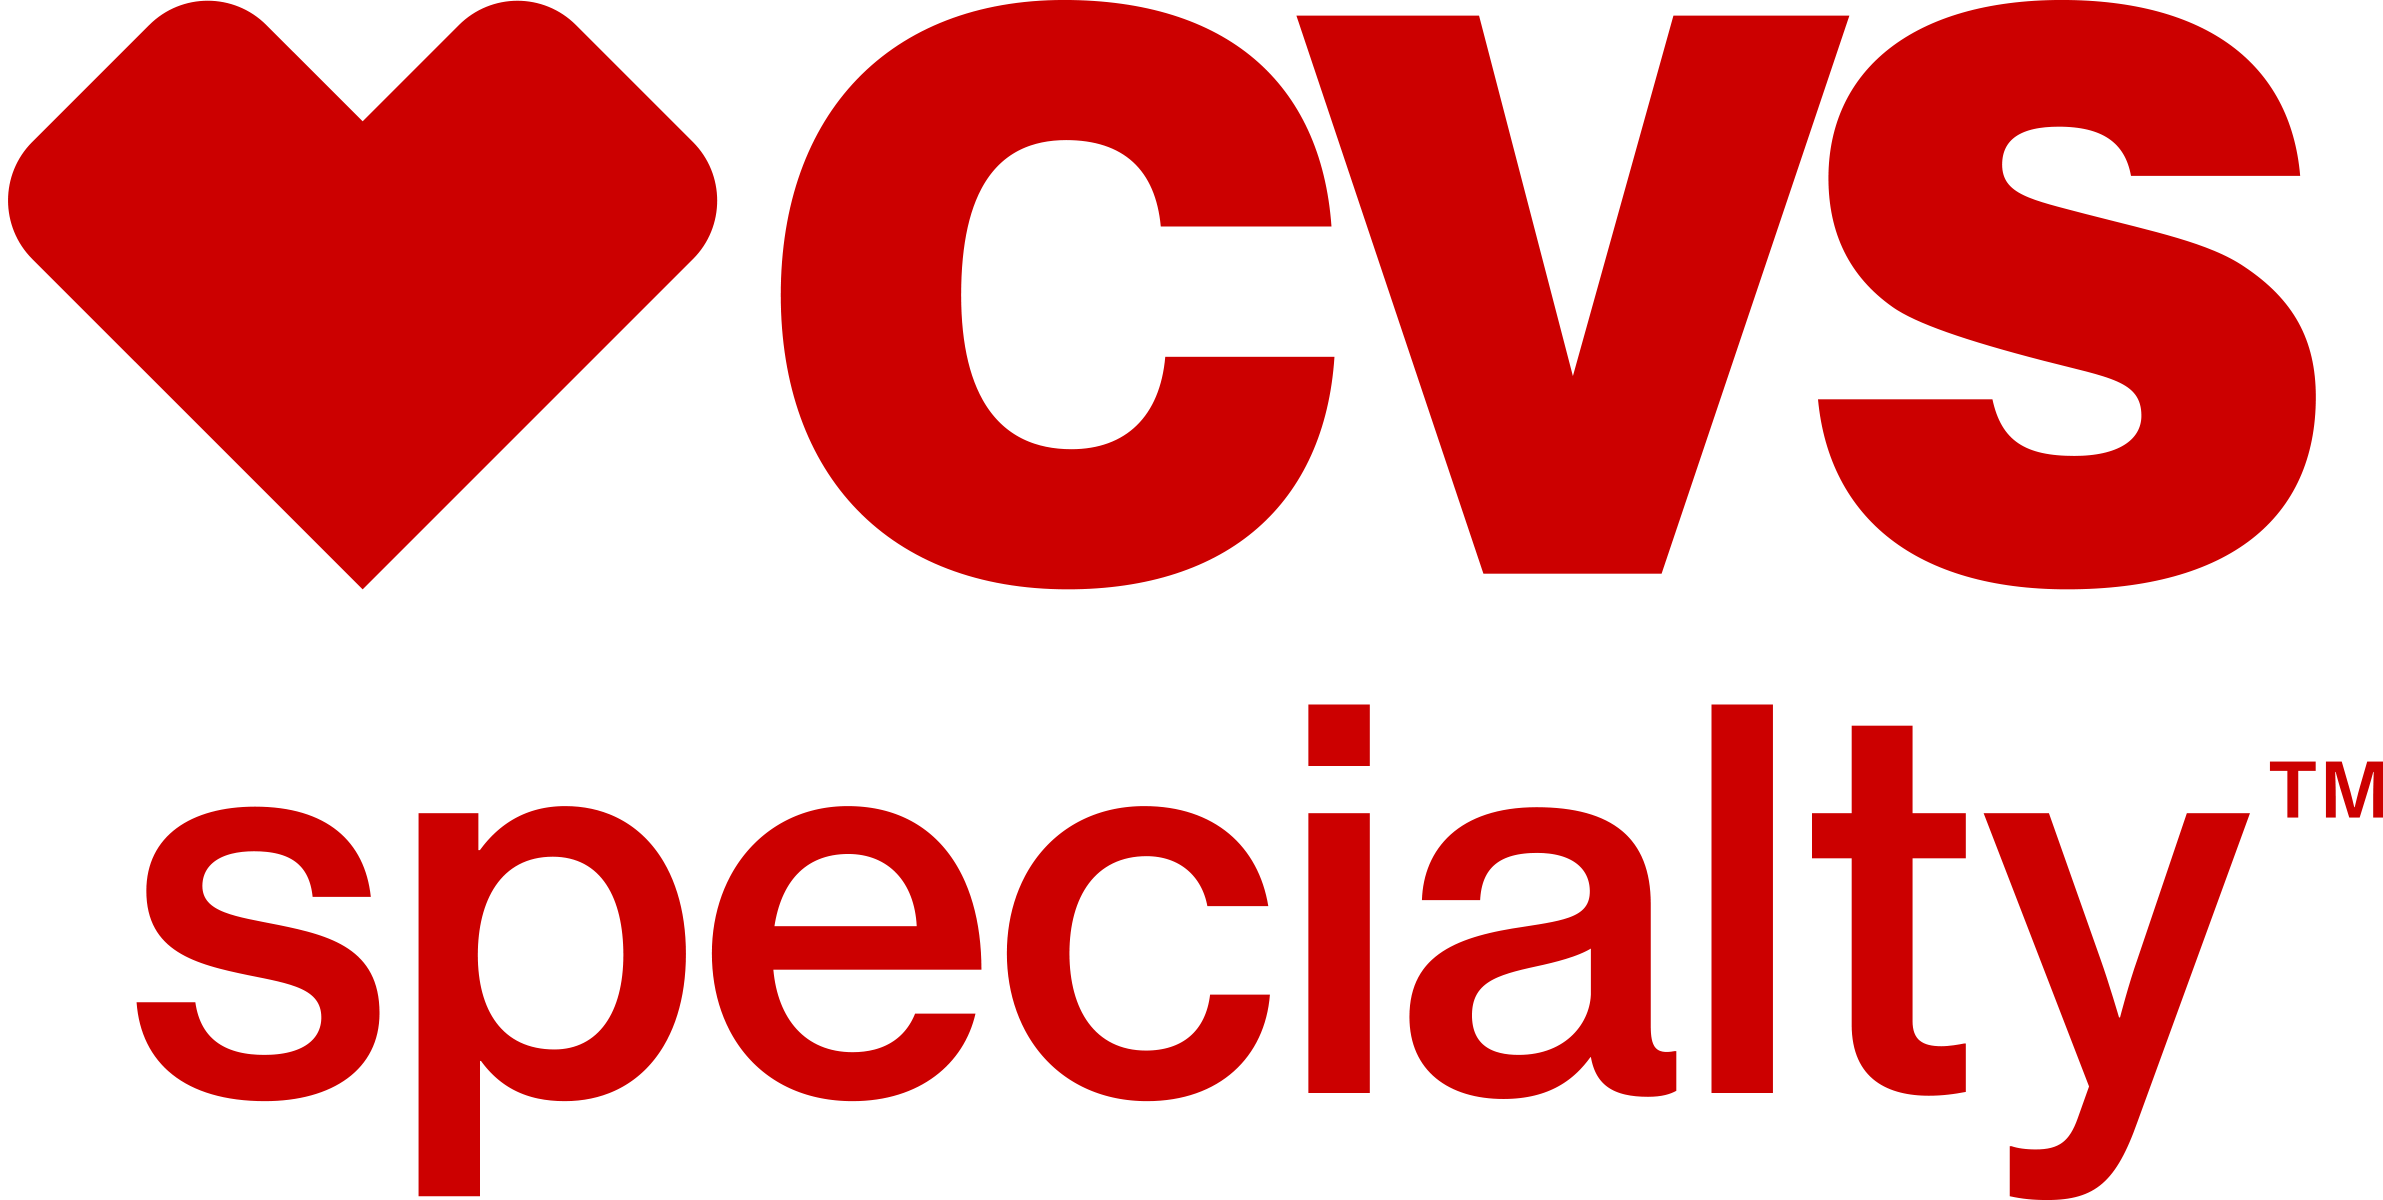 CVS Specialty logo stacked